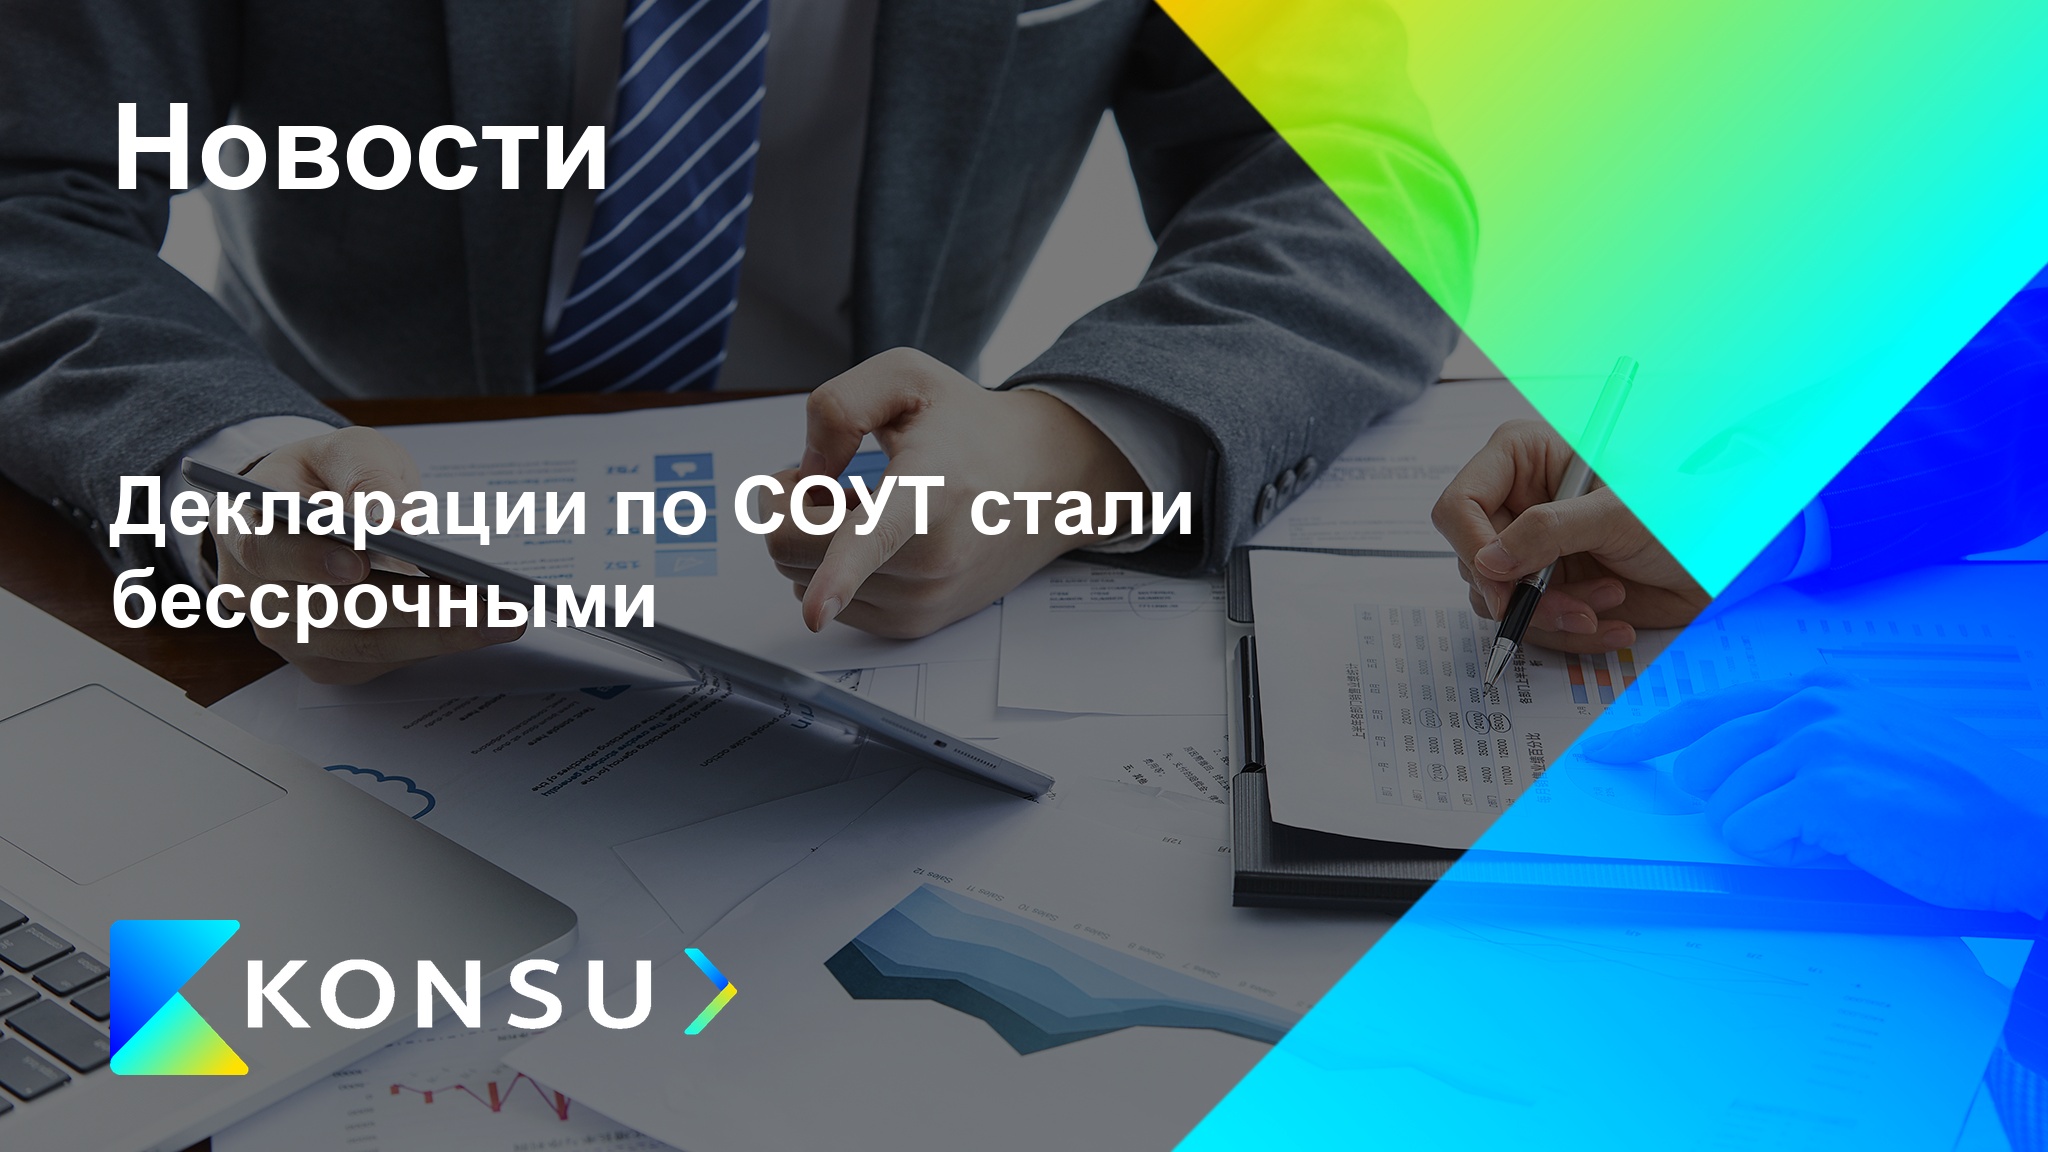 Deklaratsii sout stali bessrochnymi ru konsu outsourcing consult